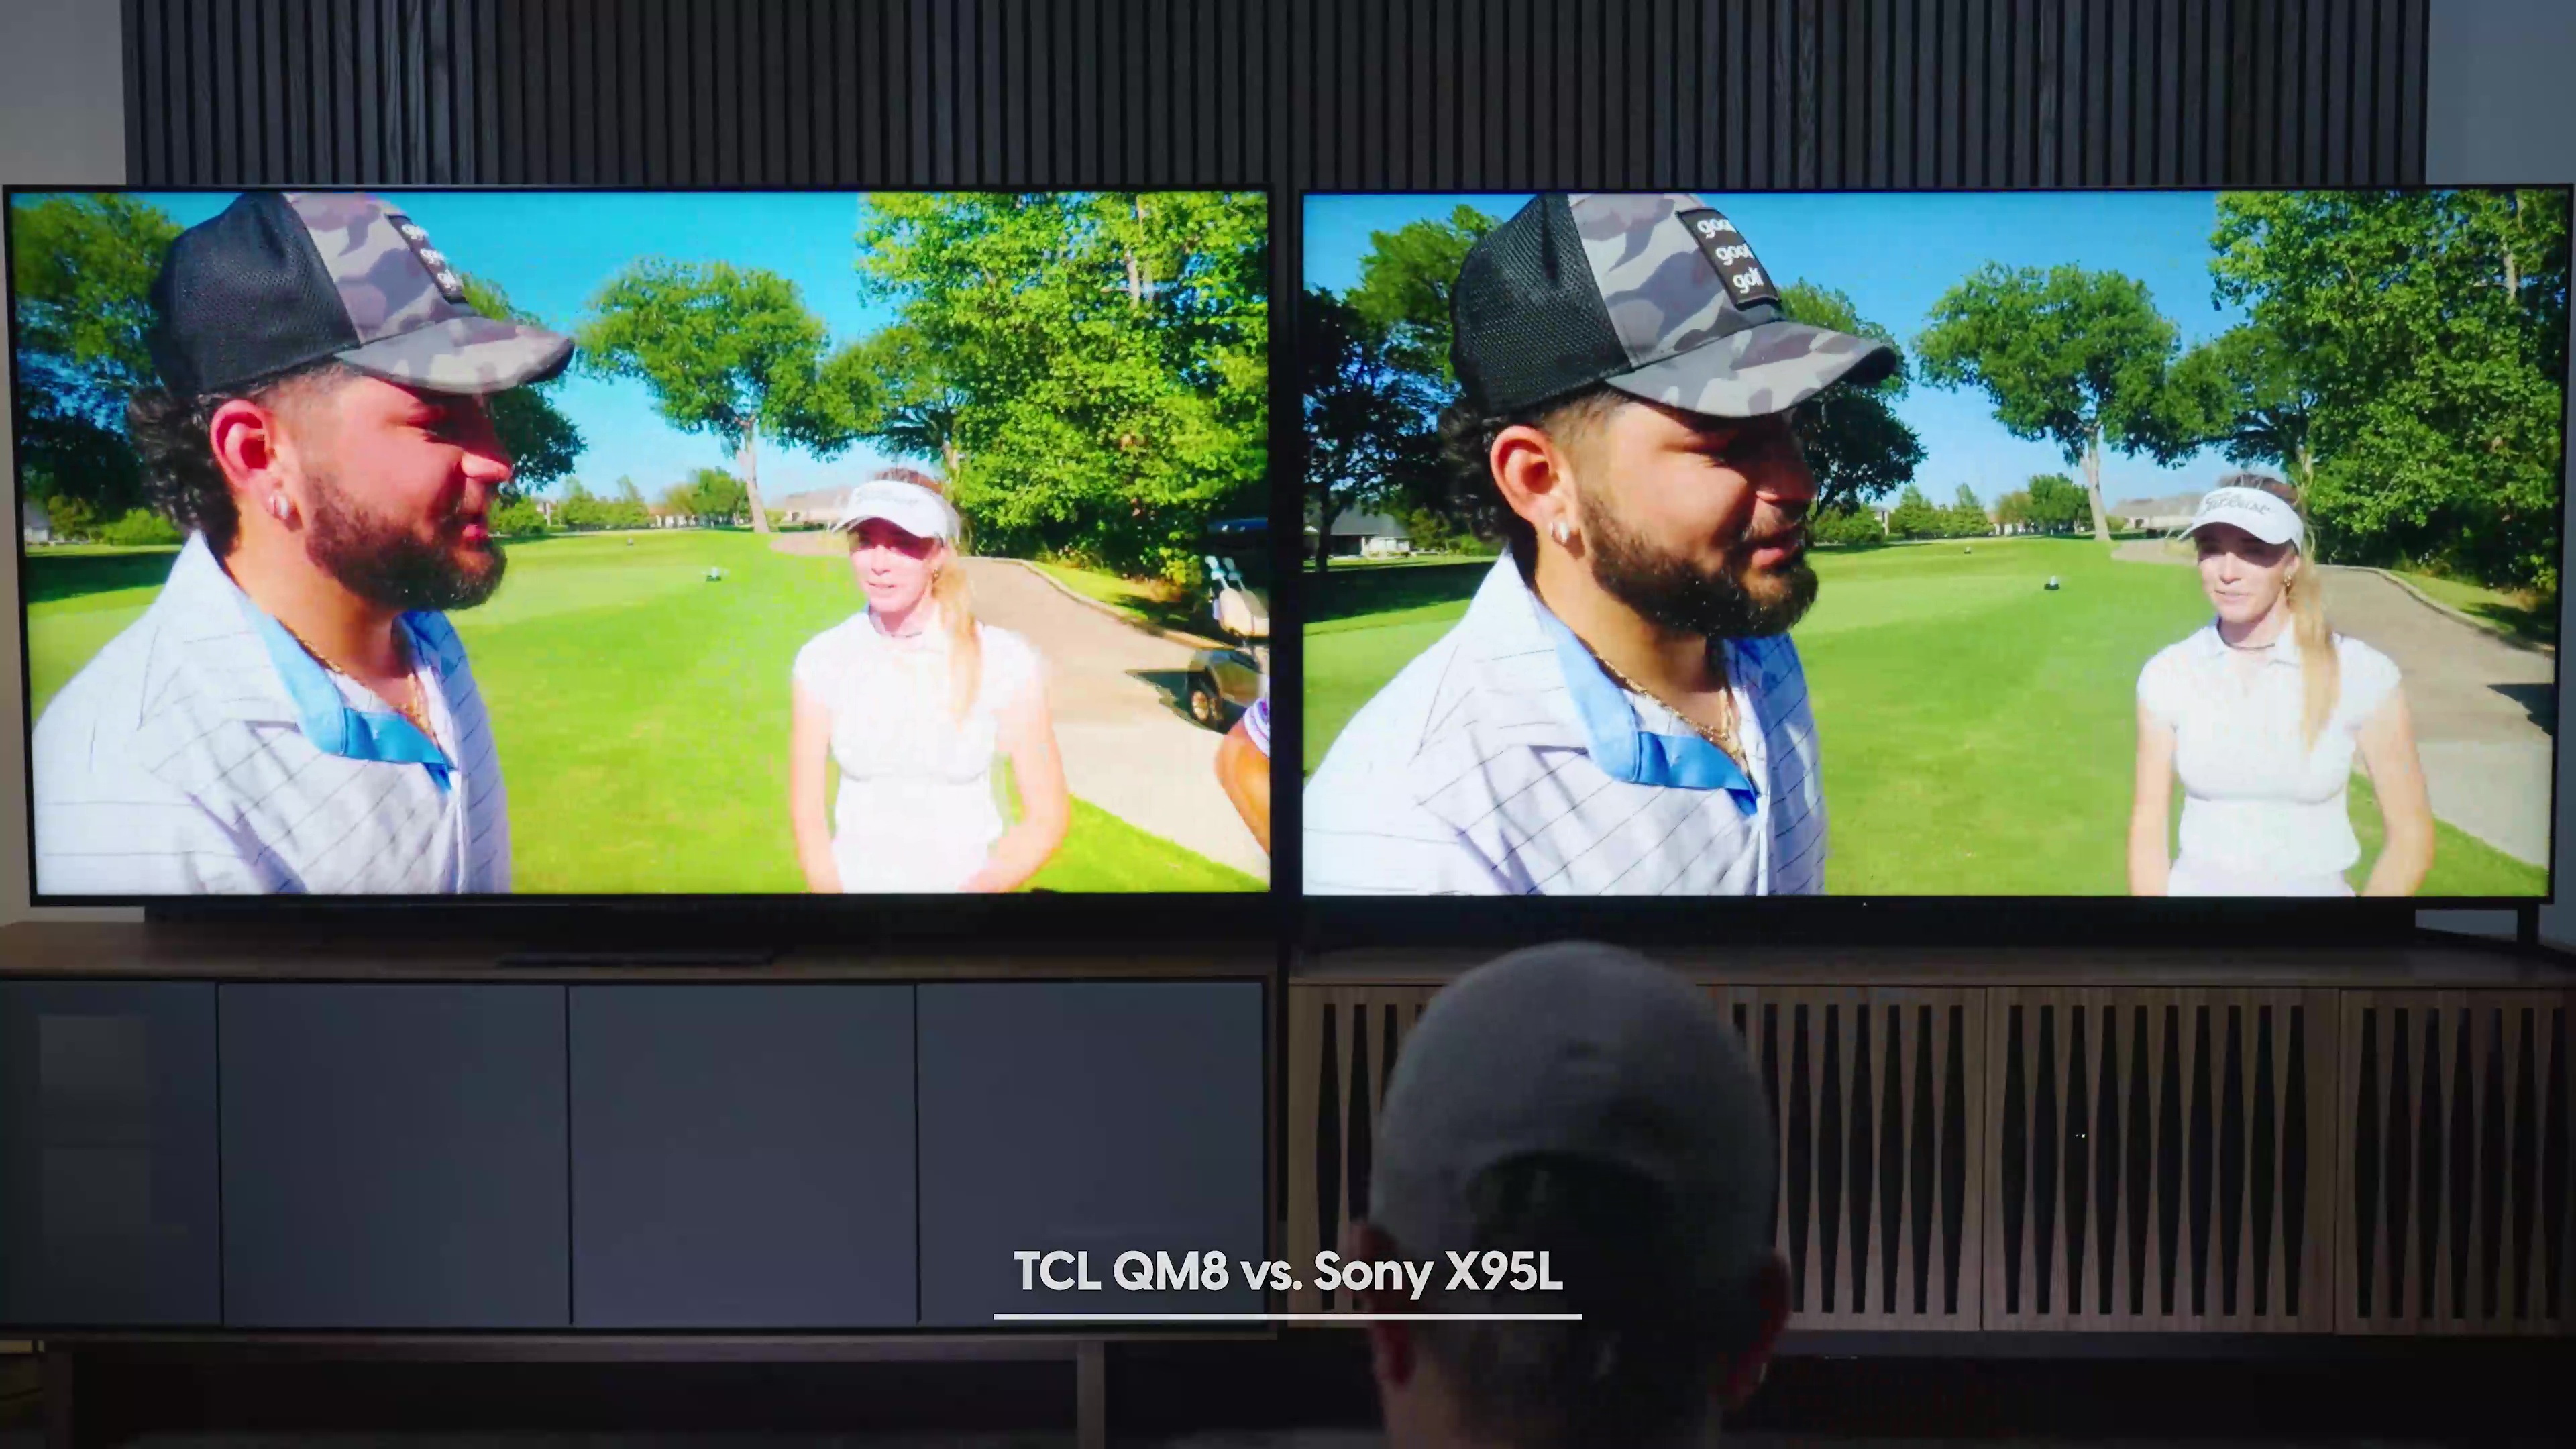 Comparación lado a lado de un hombre entrevistado en un campo de golf con una mujer al fondo en un Sony Bravia X95L frente a un TCL QM8.